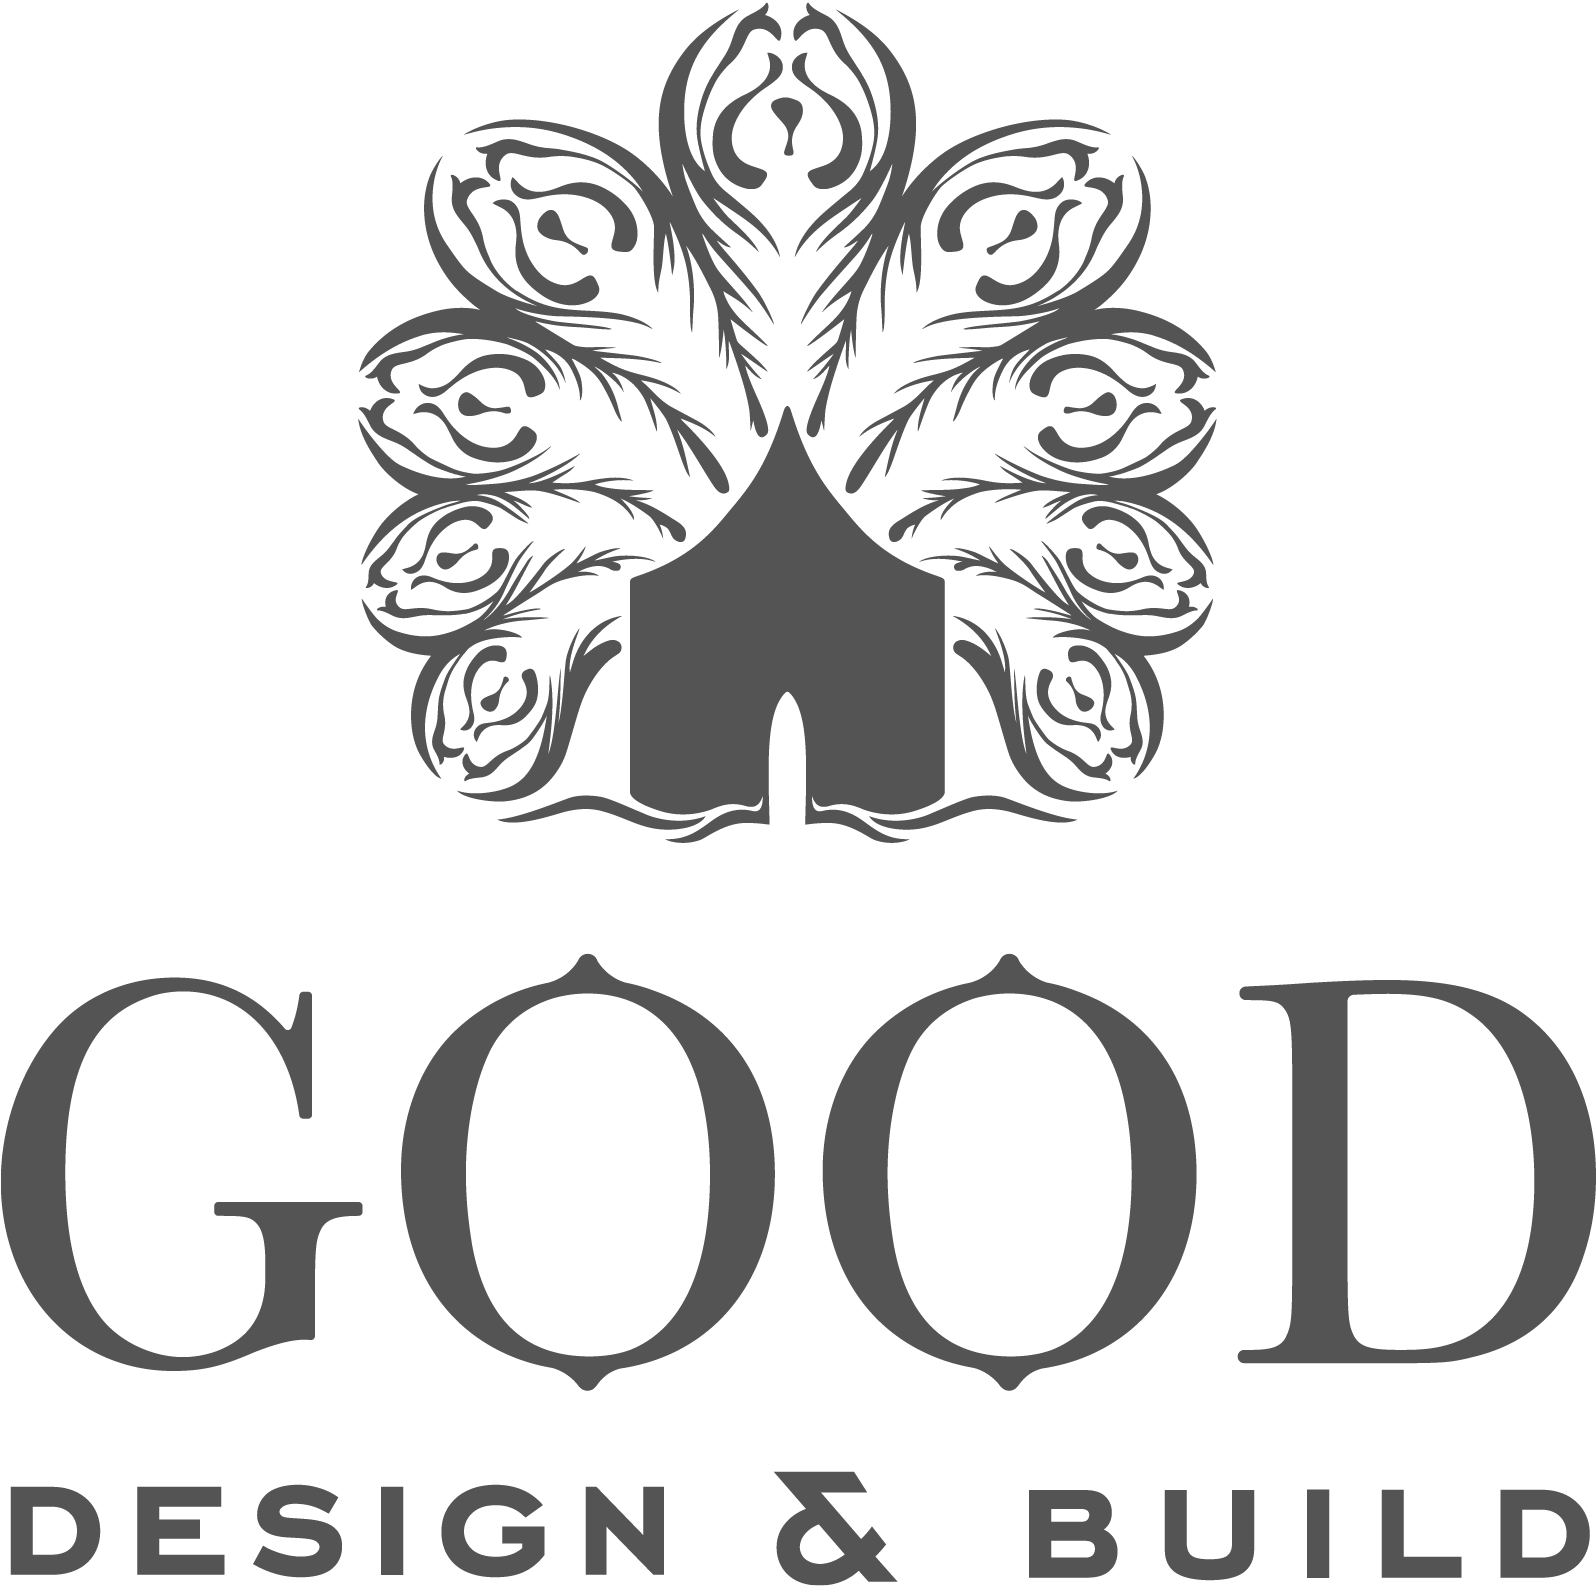 Good Design & Build Limited